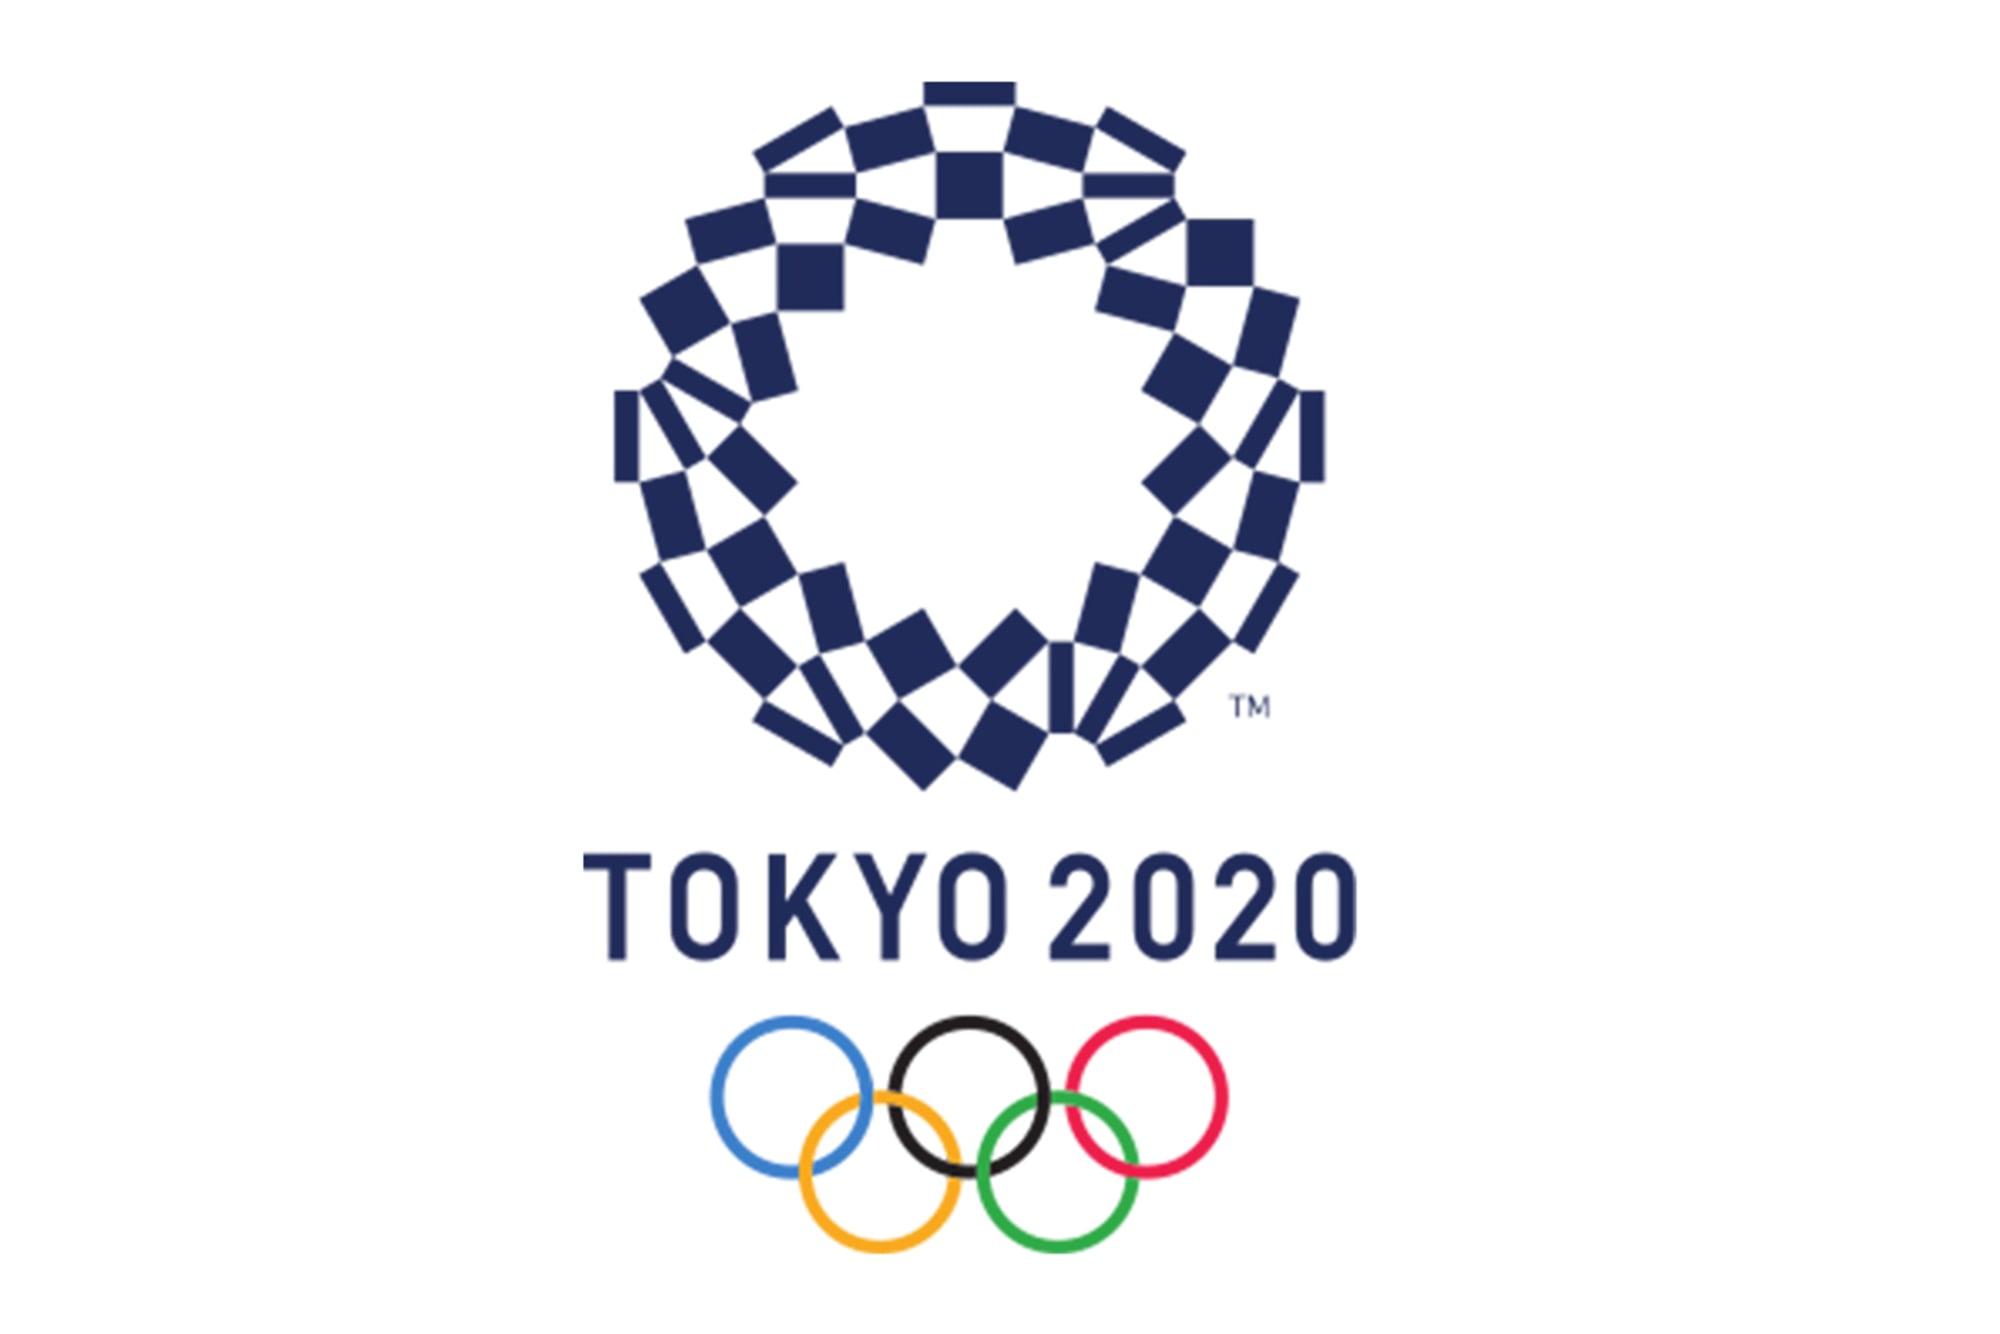 2020 Olympics Logo